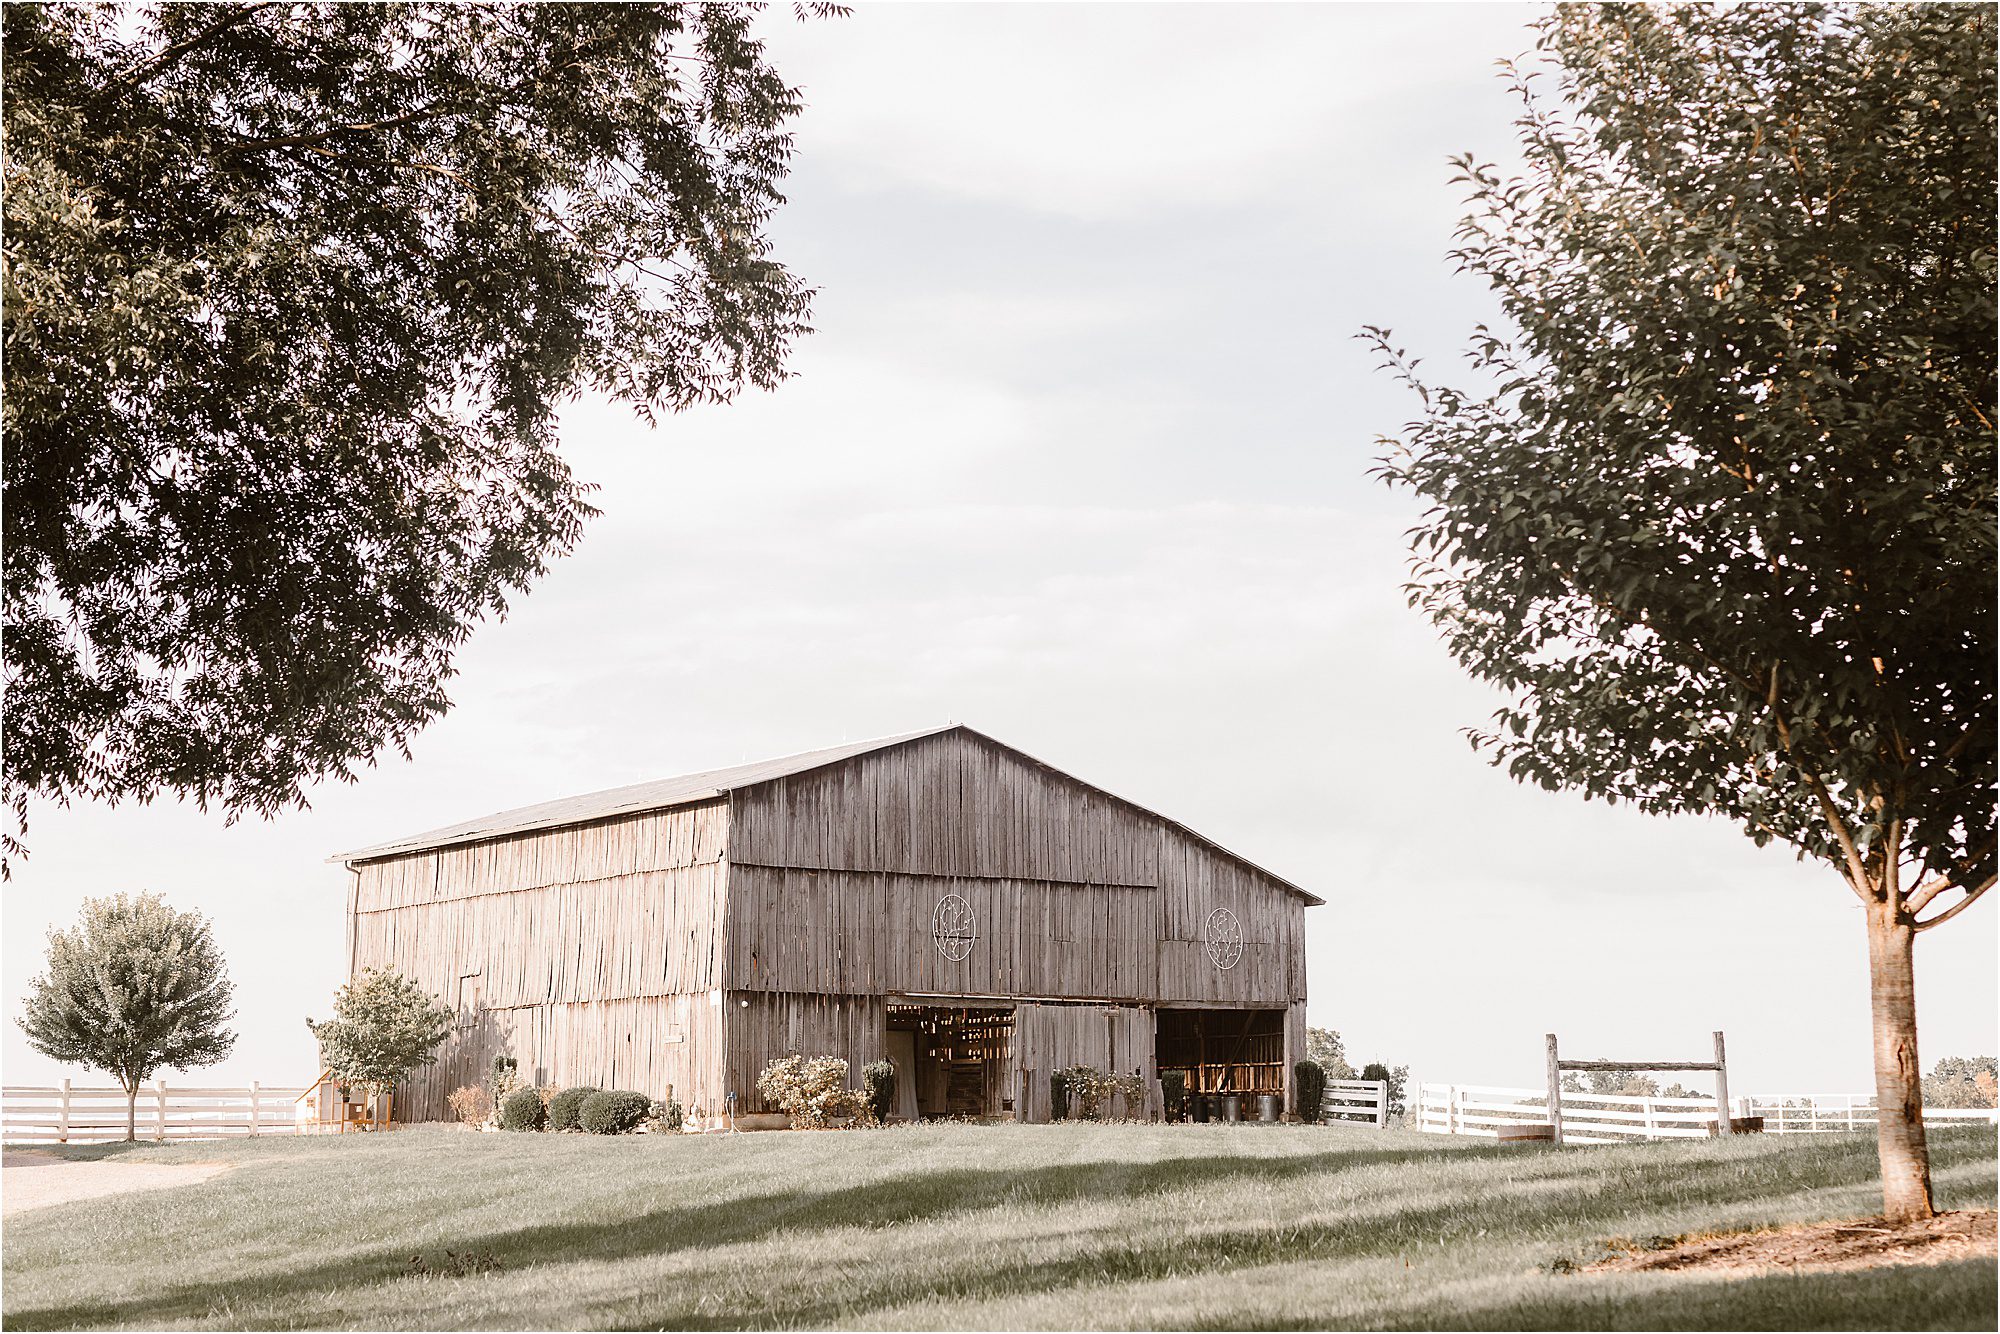 Hidden Meadow Farm in East Tennessee